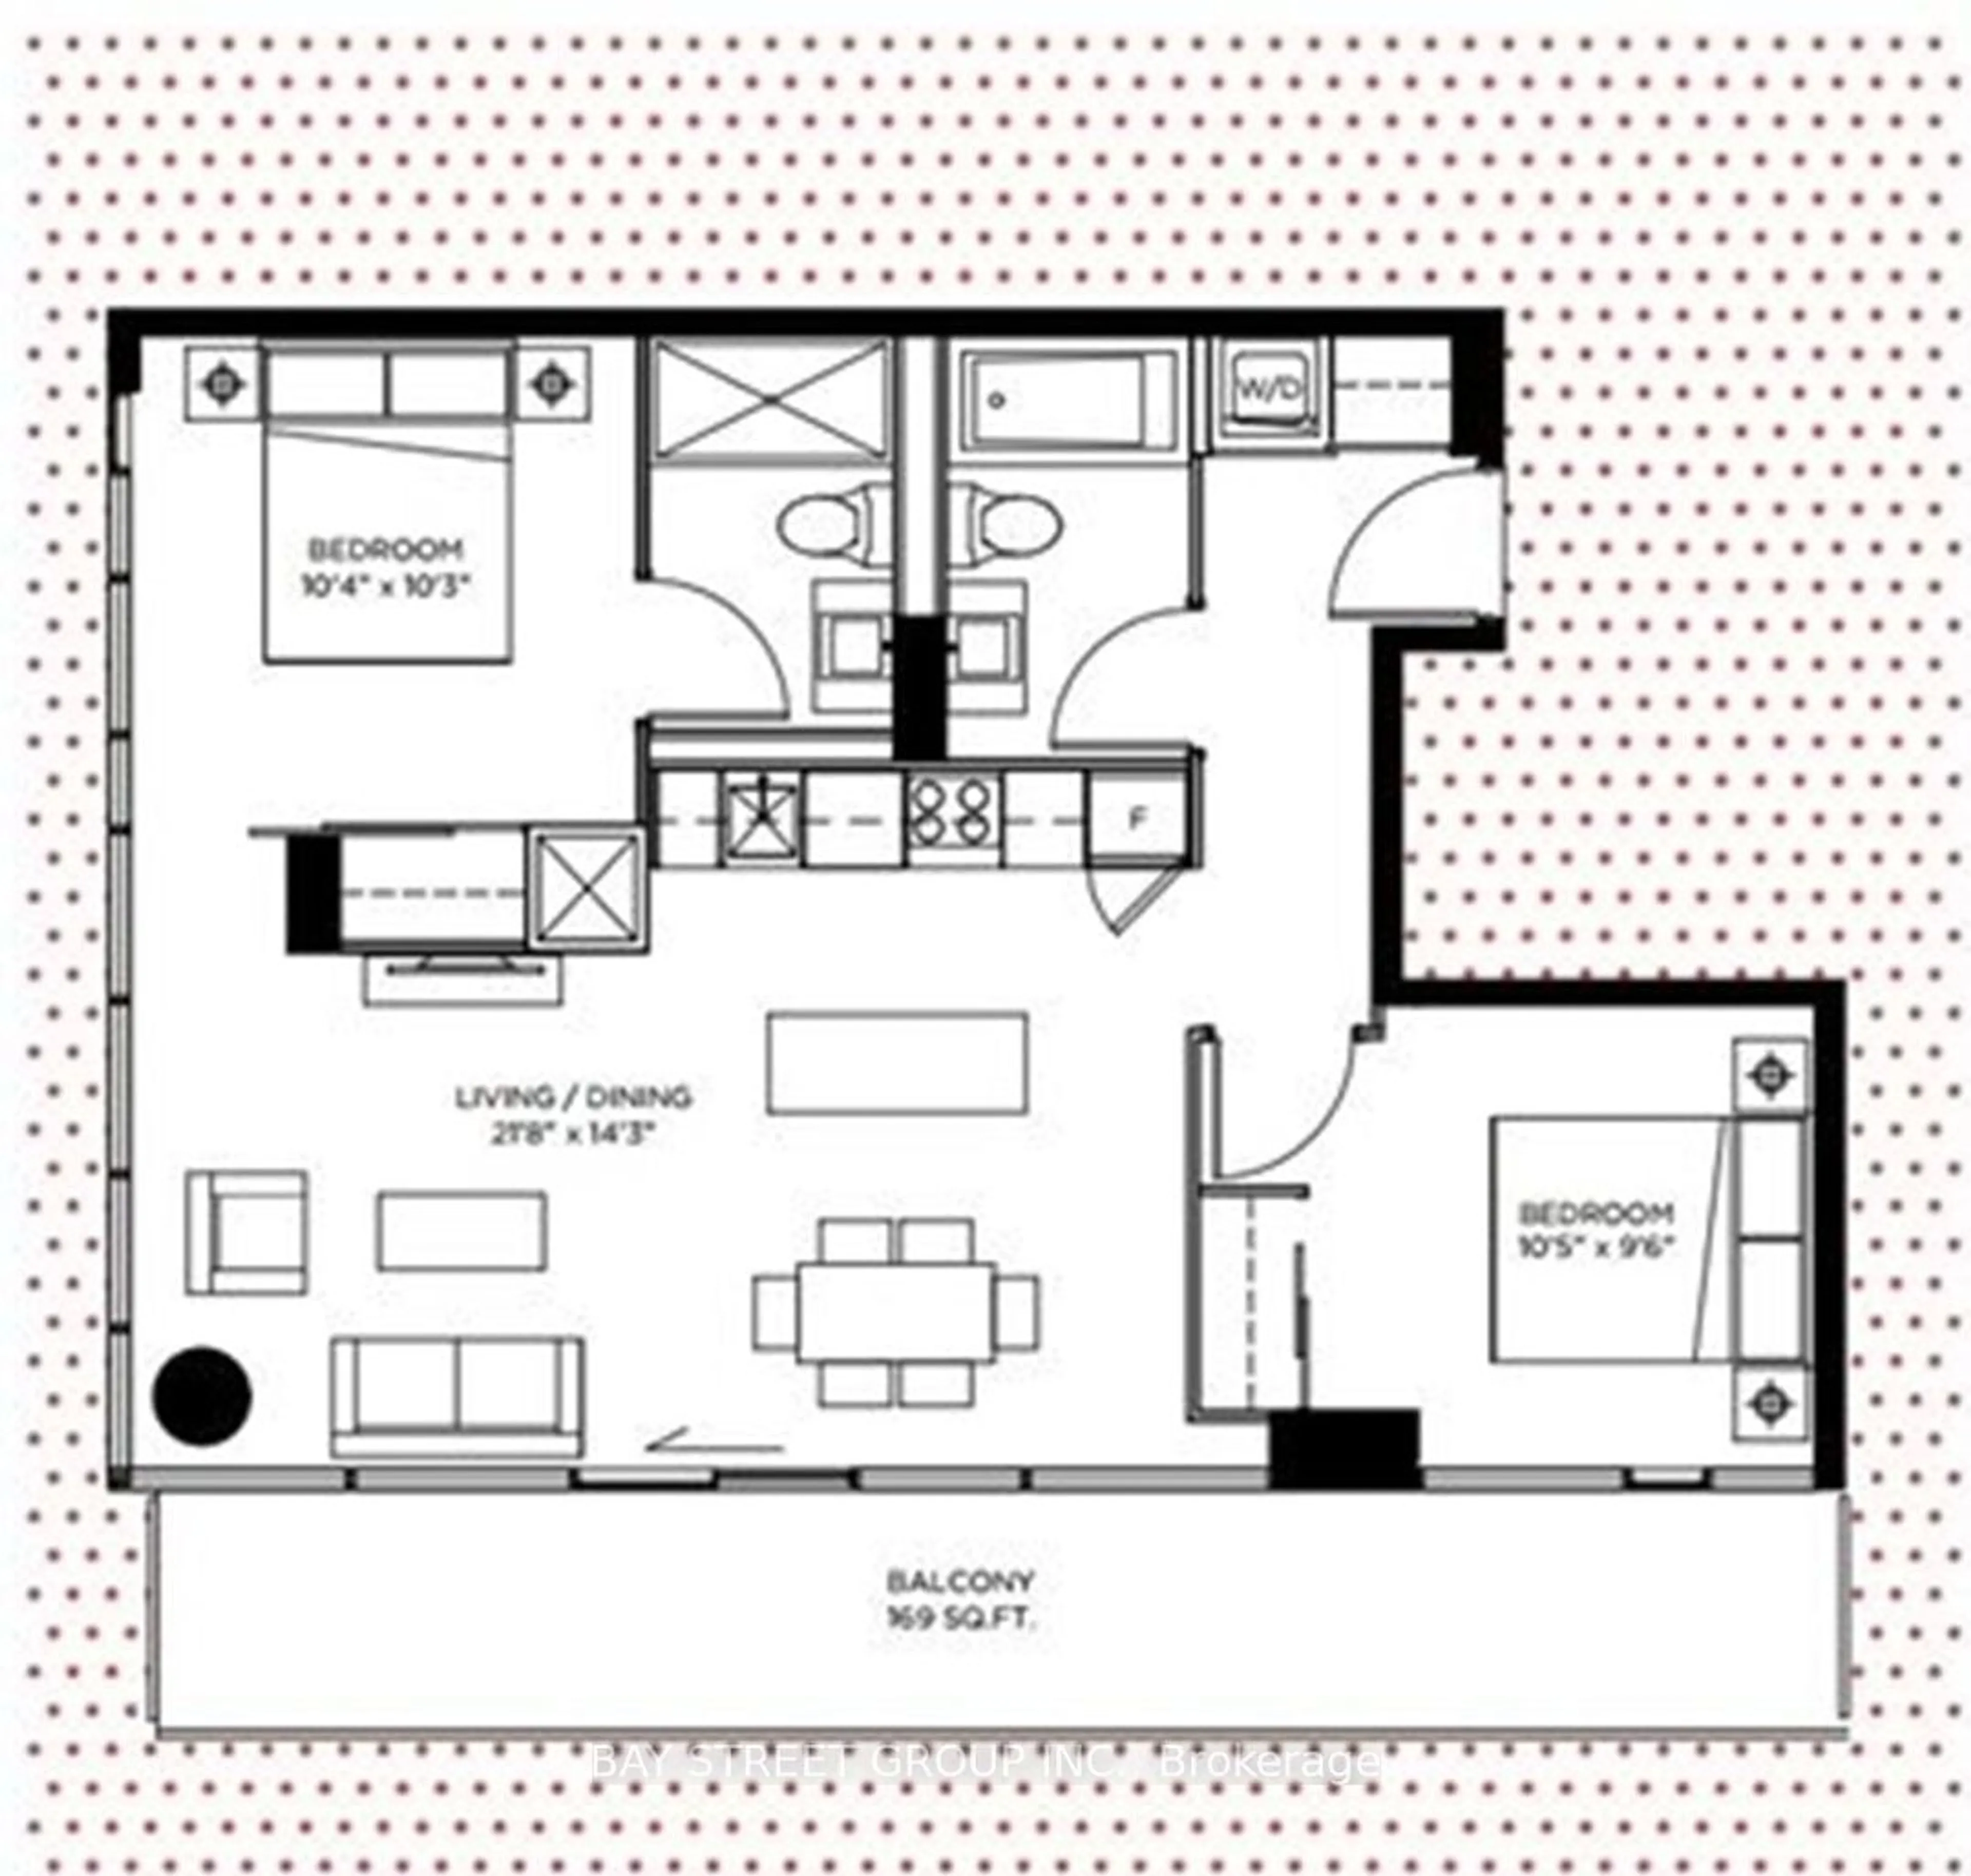 Floor plan for 101 Peter St #4009, Toronto Ontario M5V 0G6